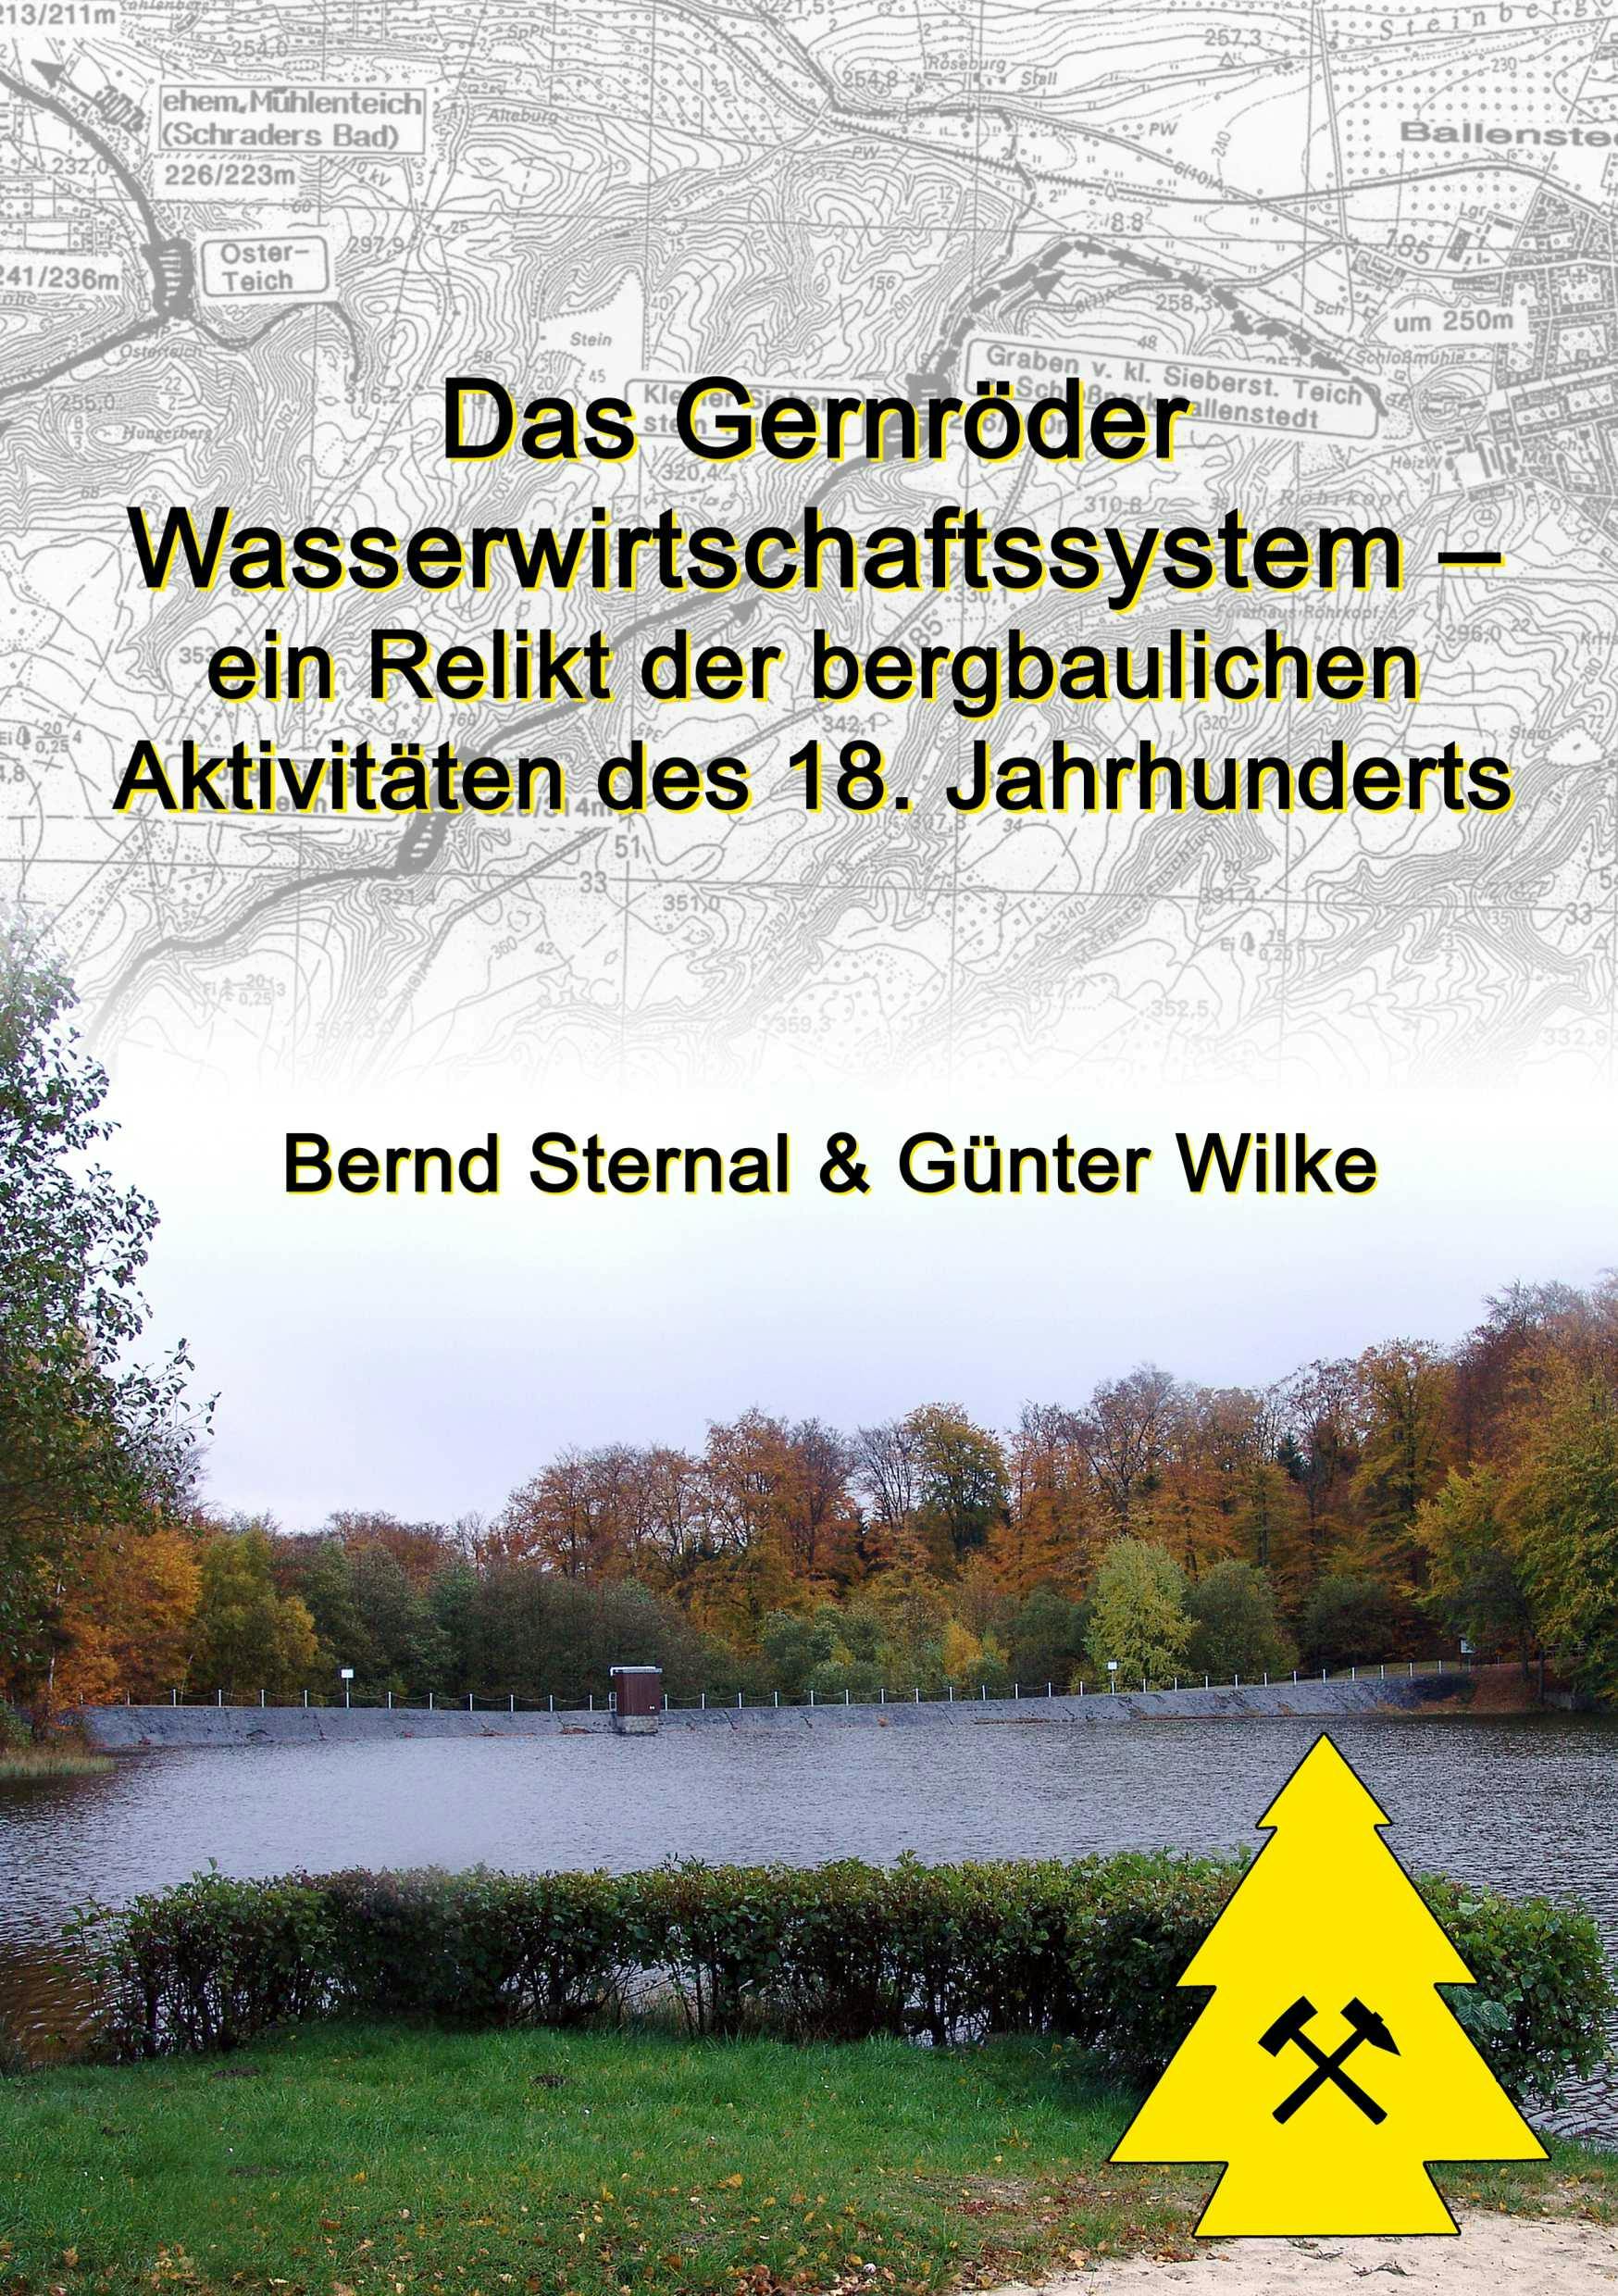 Das Gernröder Wasserwirtschaftssystem - ein Relikt der bergbaulichen Aktivitäten des 18. Jahrhunderts - Bernd Sternal, Günter Wilke